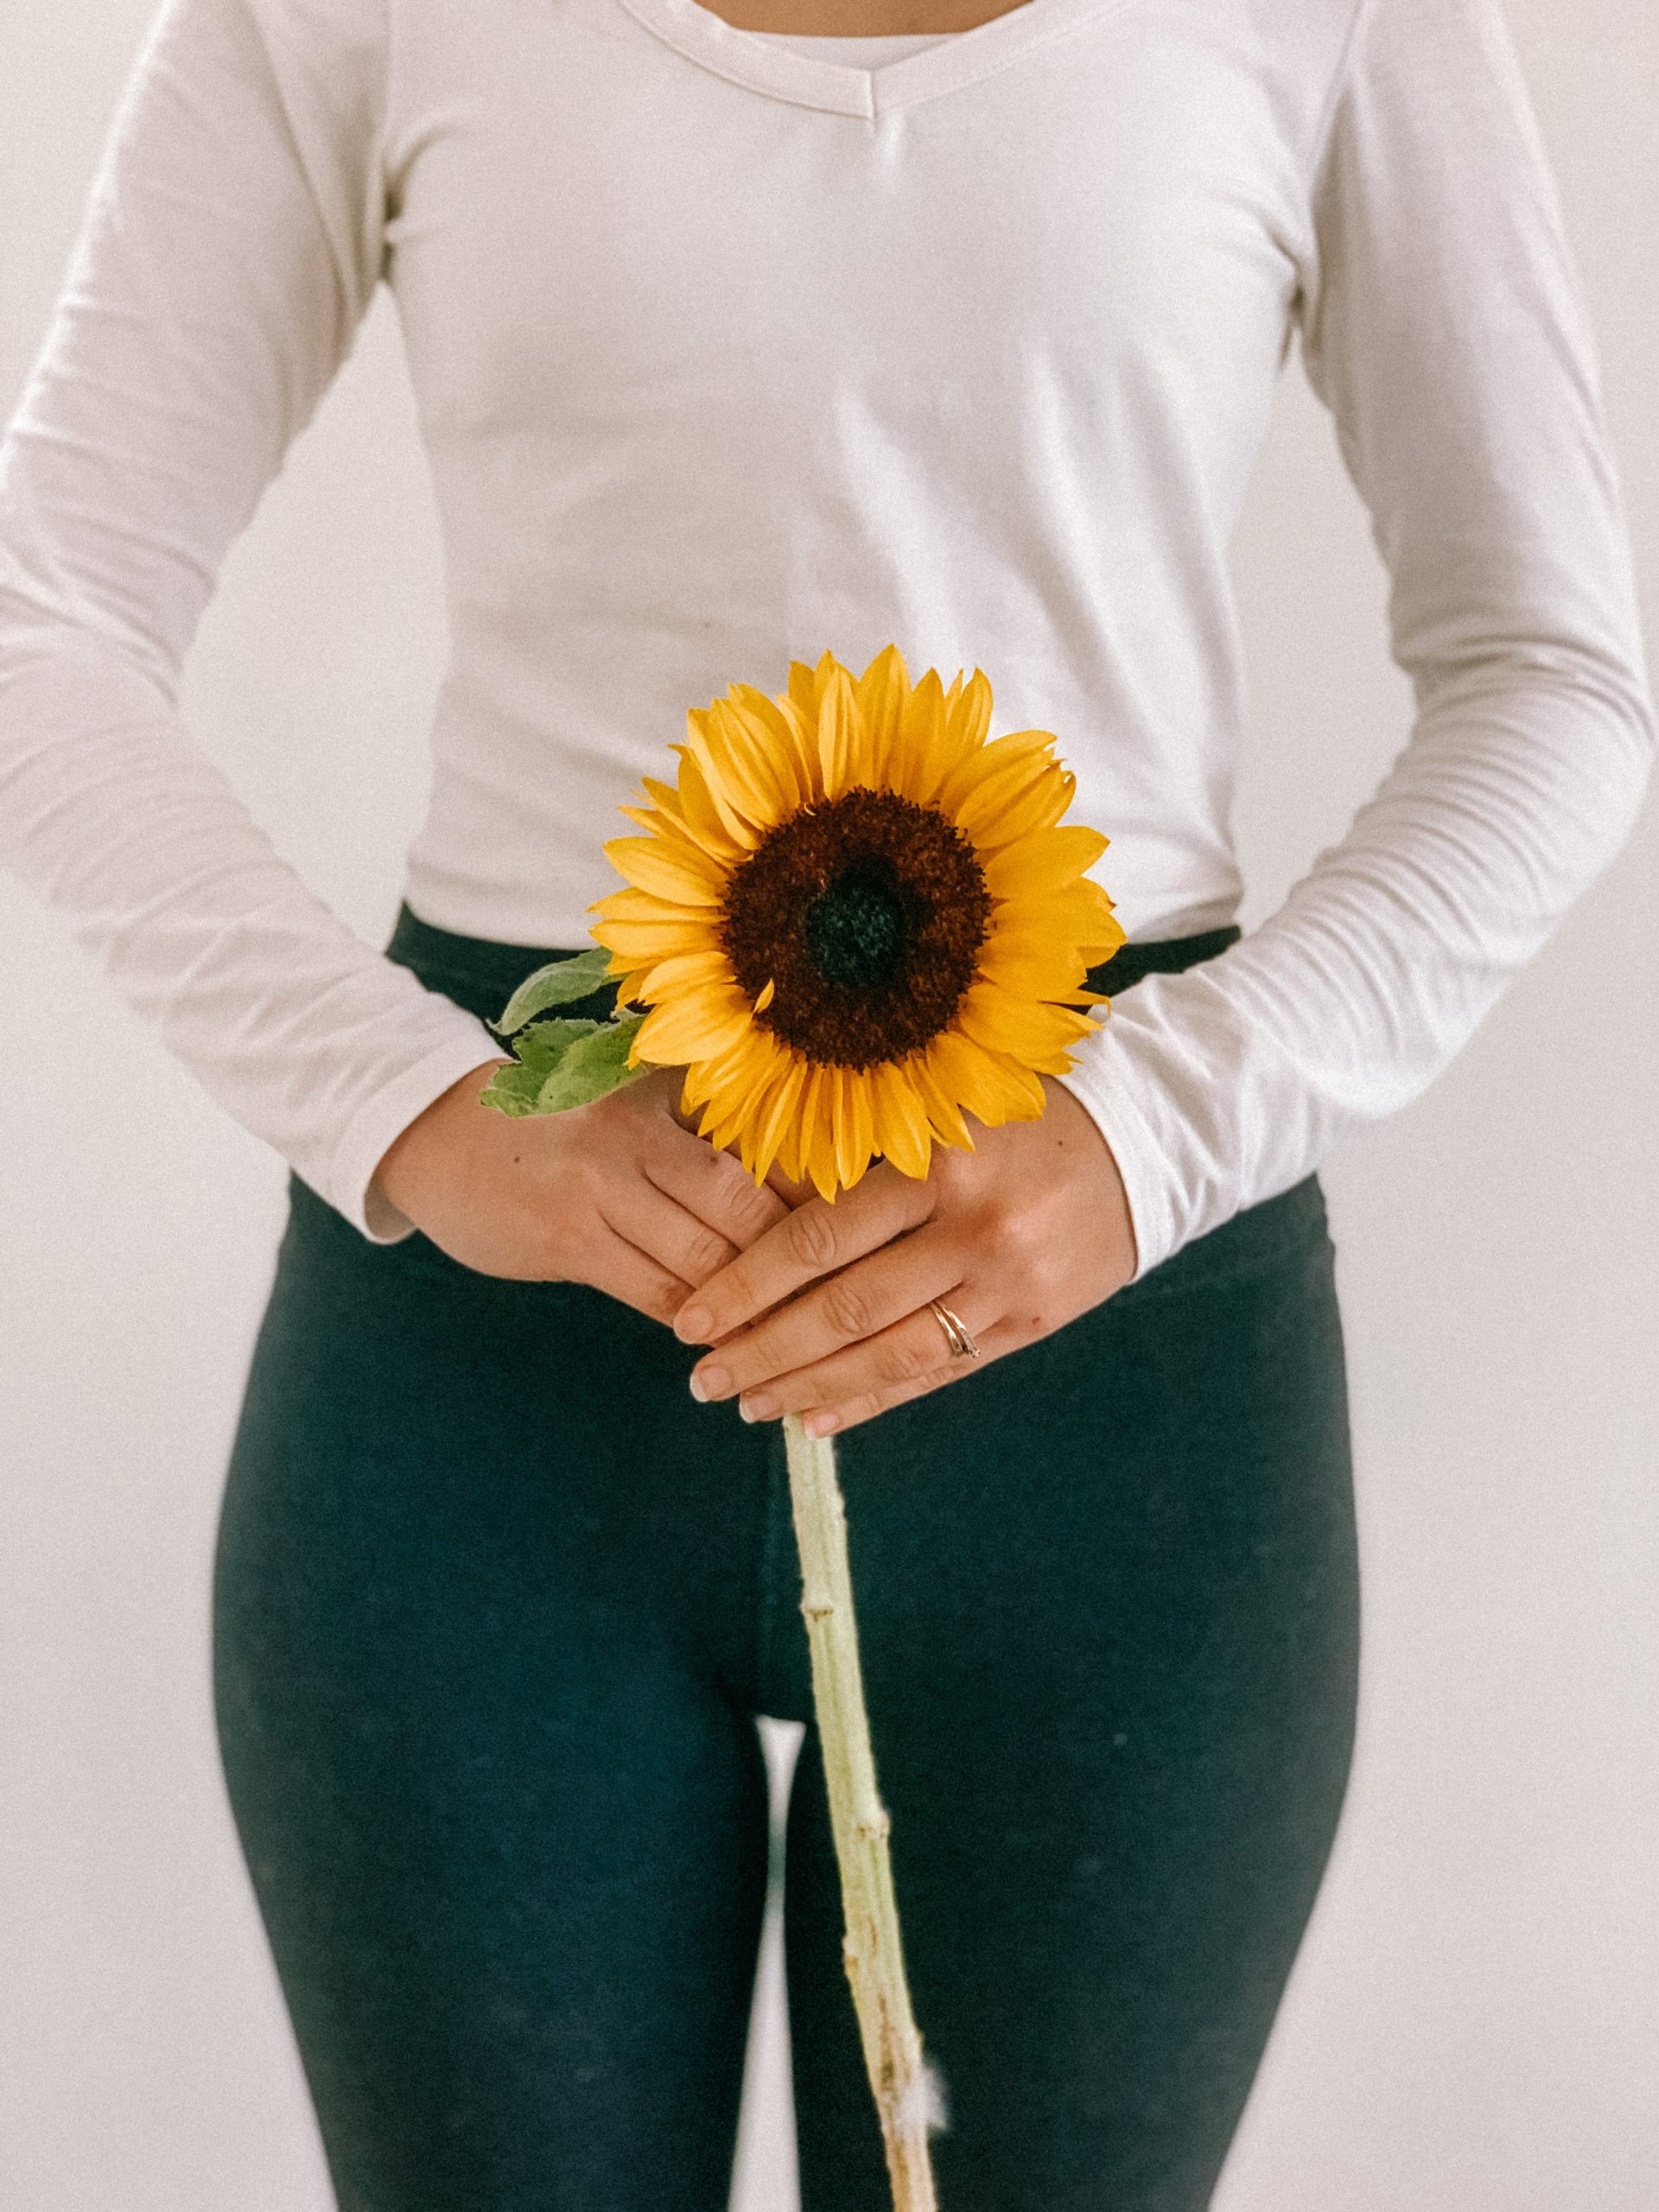 holding sunflower infront of pelvis